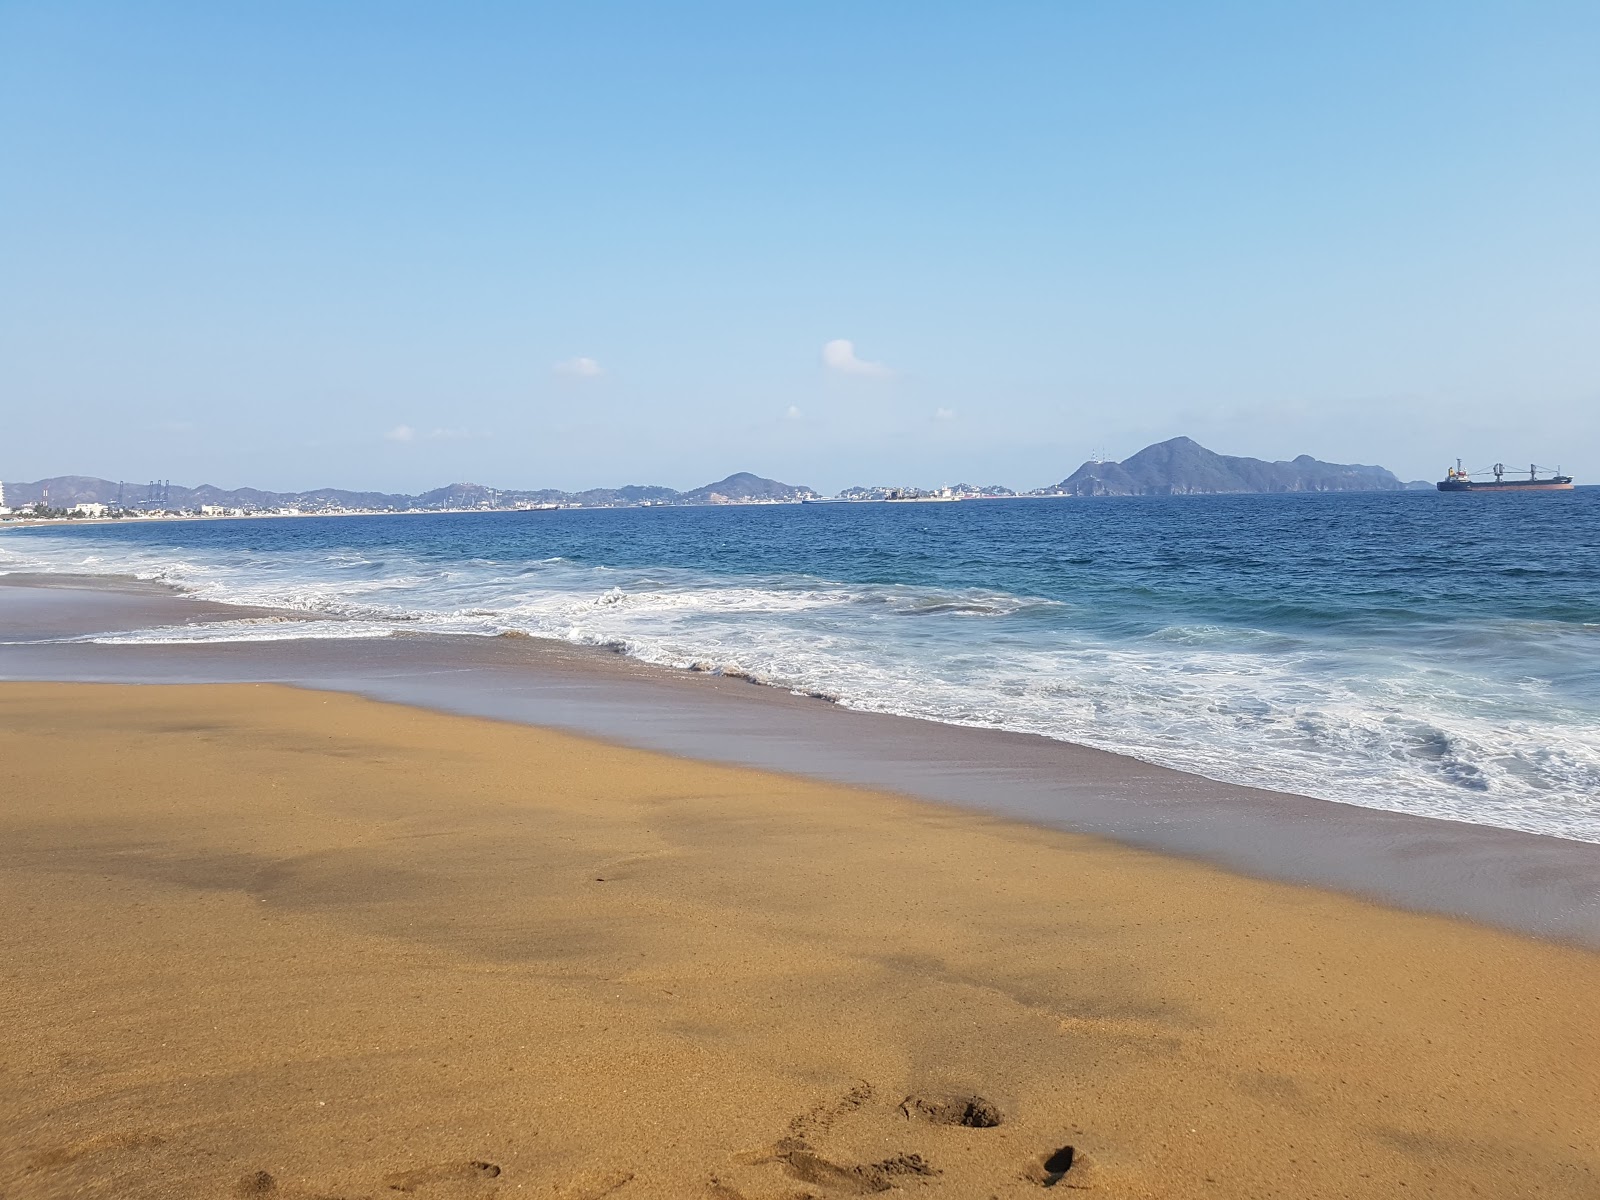 Playa Salagua'in fotoğrafı - rahatlamayı sevenler arasında popüler bir yer